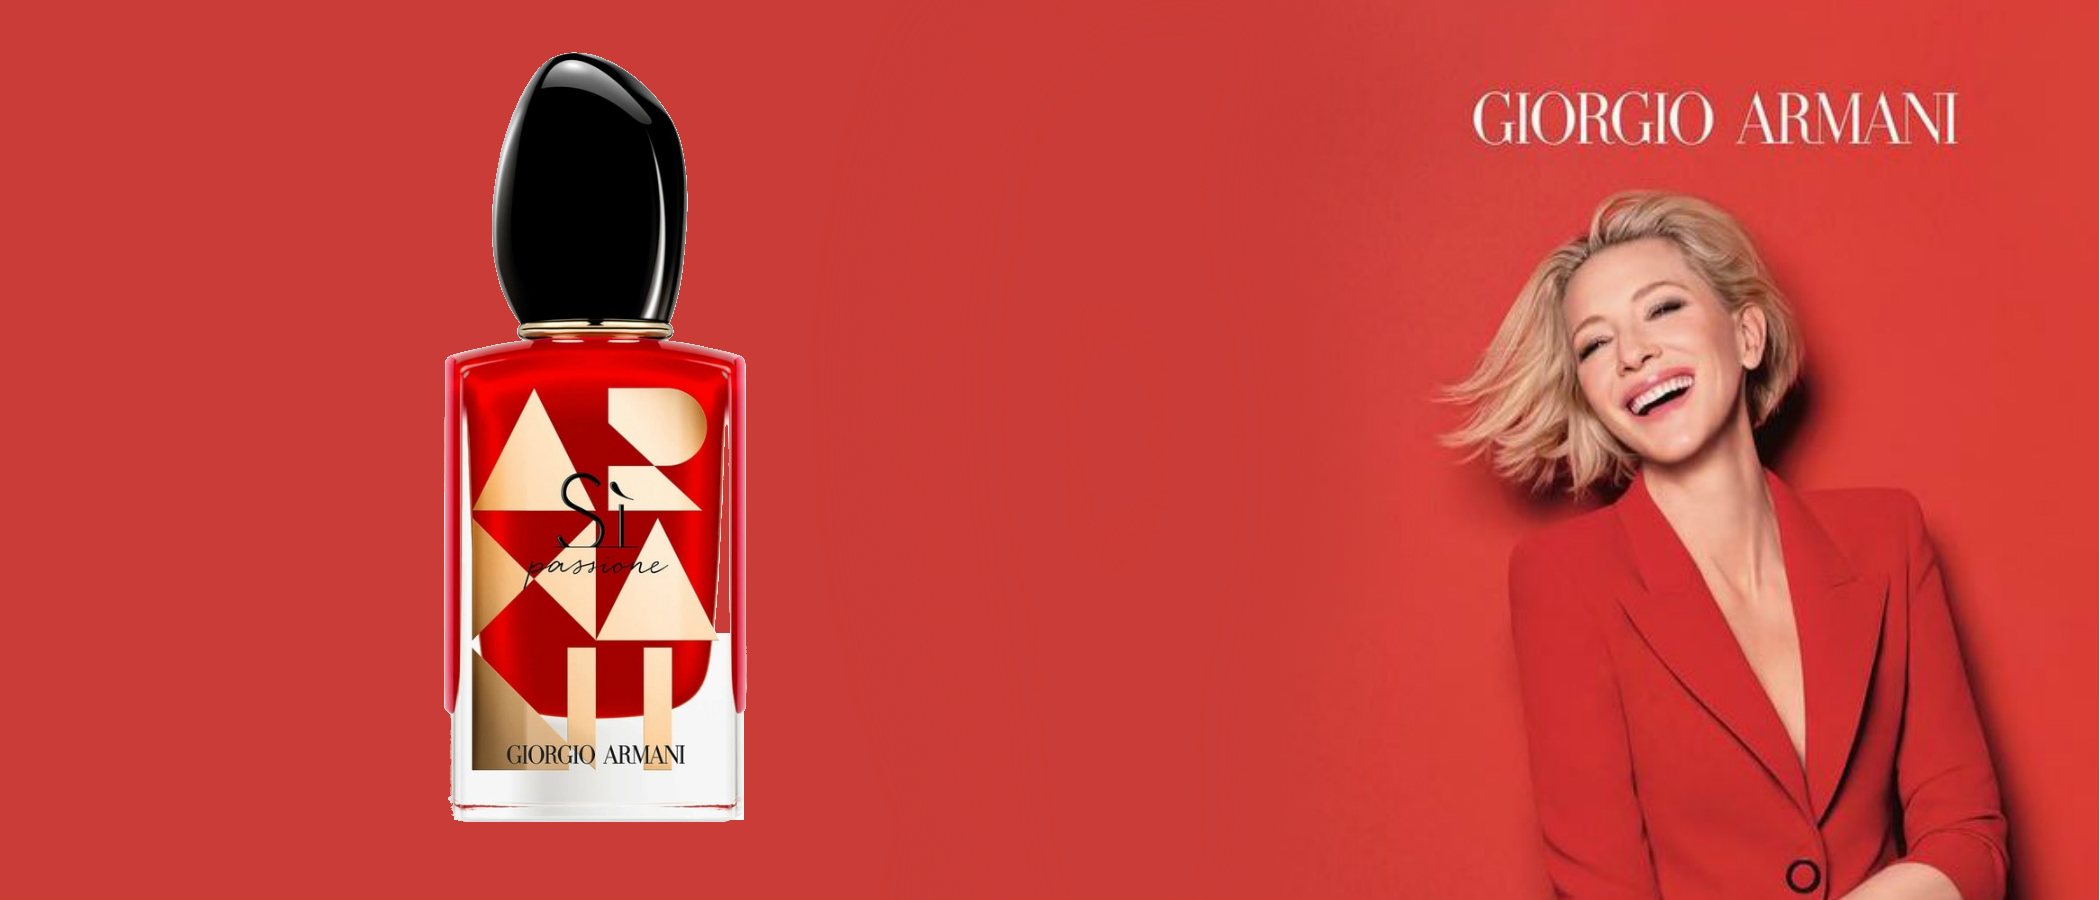 Giorgio Armani reedita el perfume 'Sì Passione' con un nuevo packaging en edición limitada